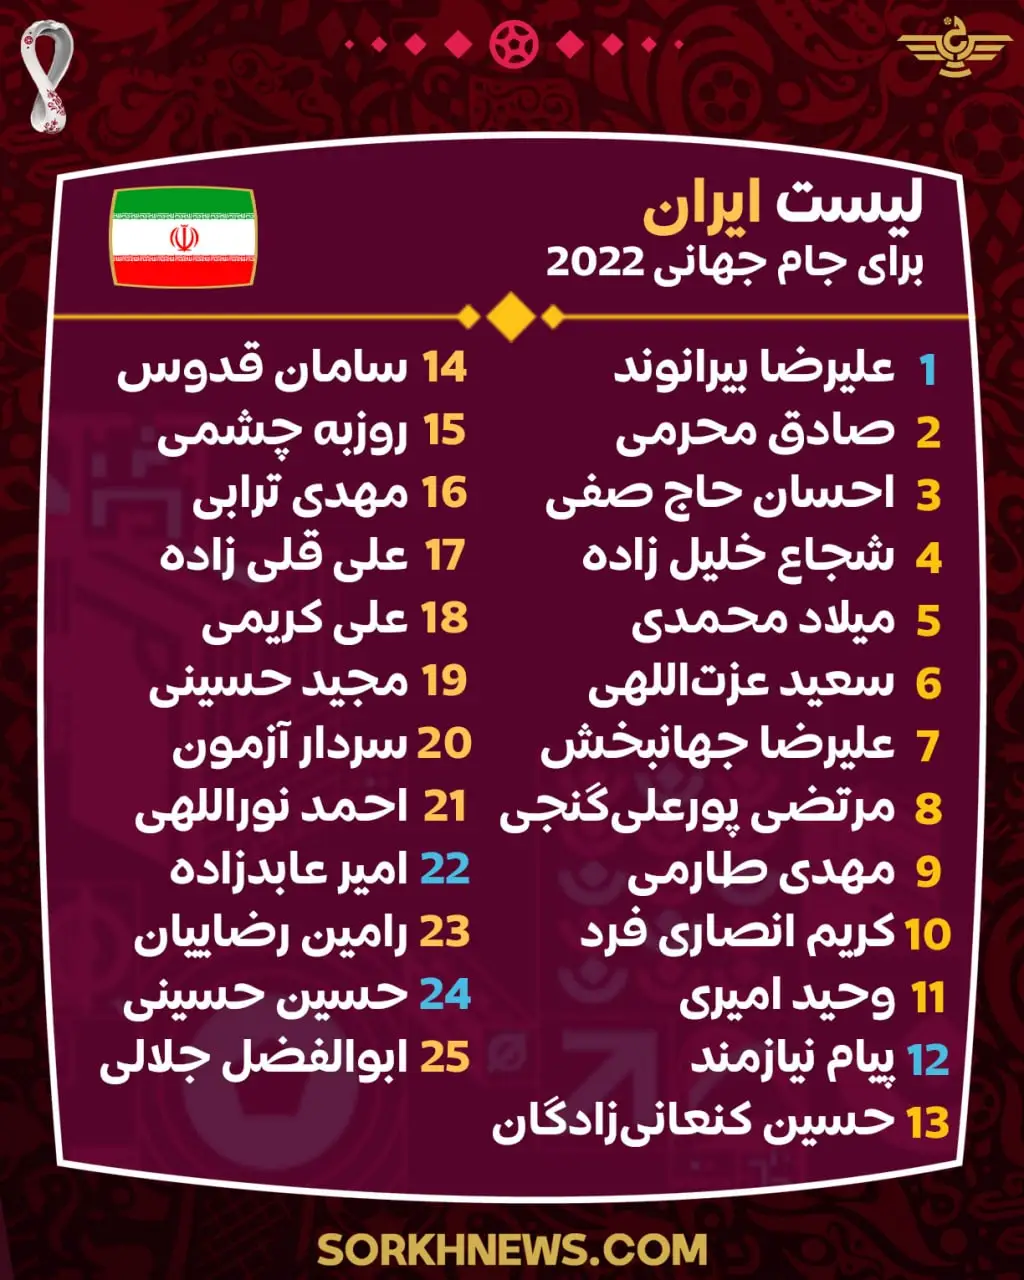 لیست بازیکنان و شماره پیراهن های تیم ملی ایران در جام جهانی 2022